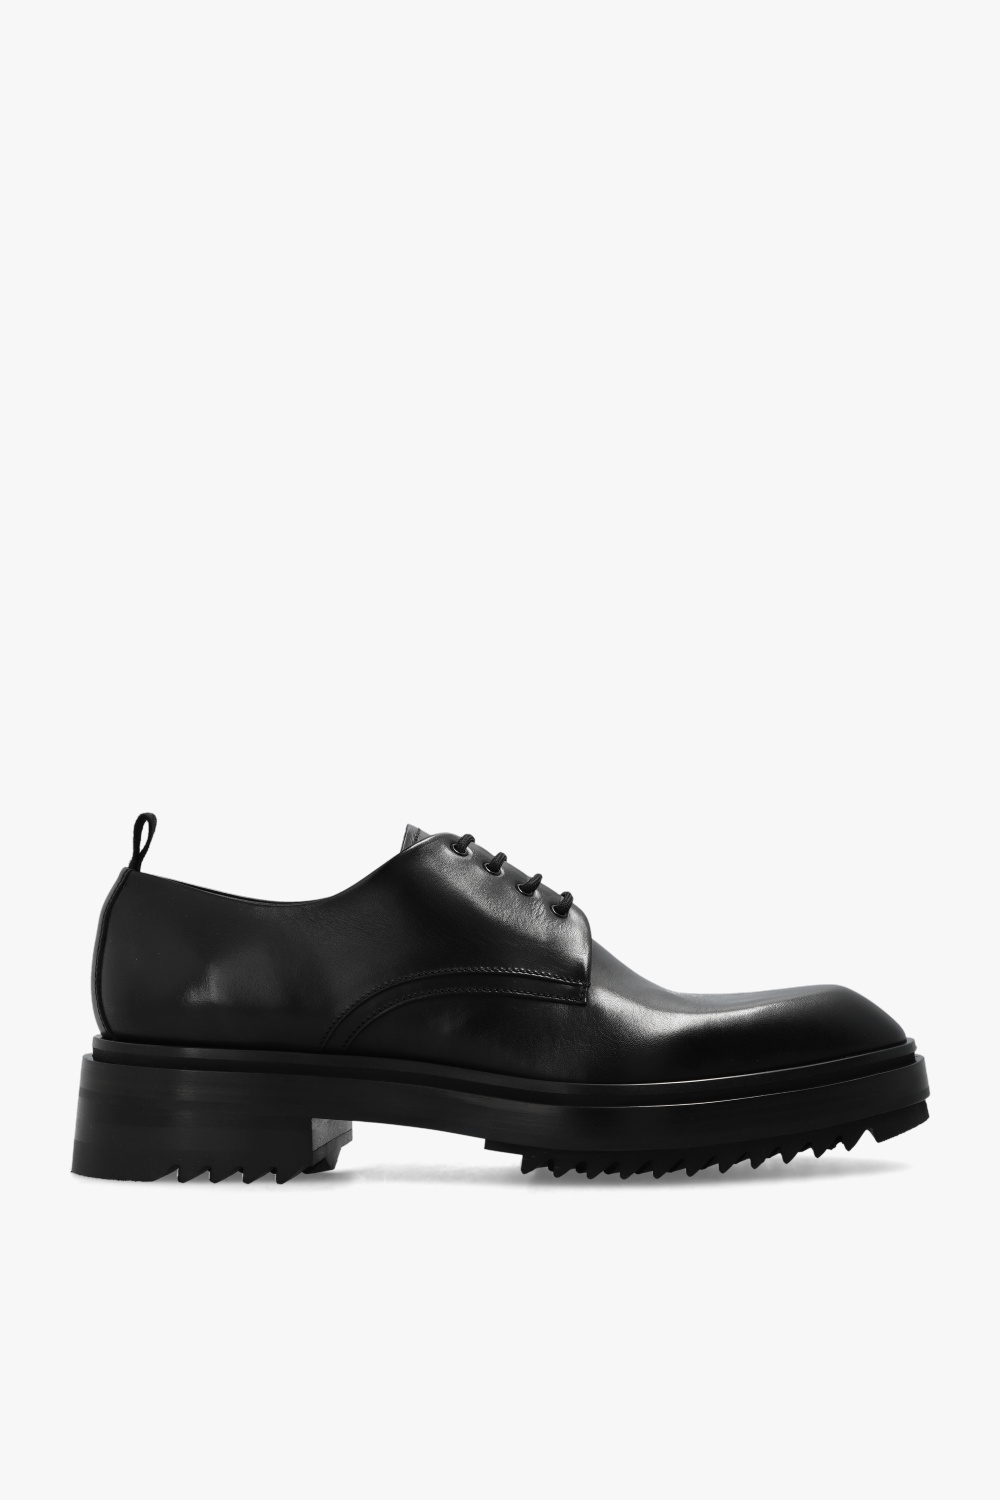 Lanvin ‘Alto’ Derby shoes